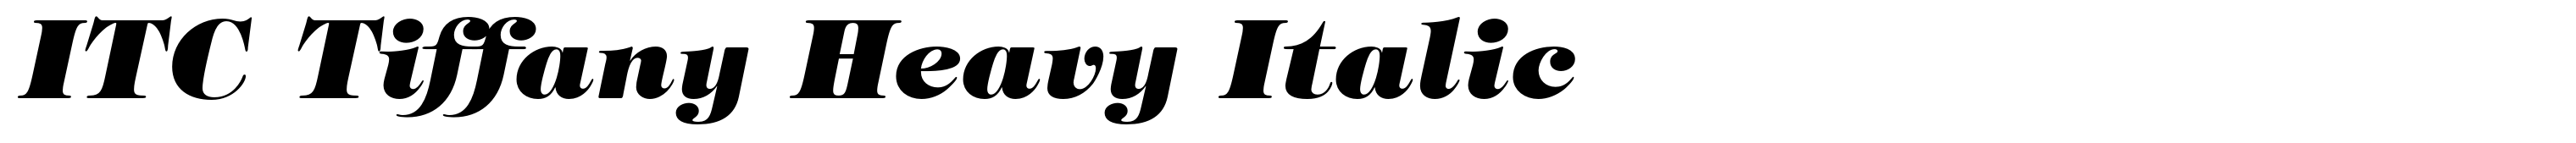 ITC Tiffany Heavy Italic